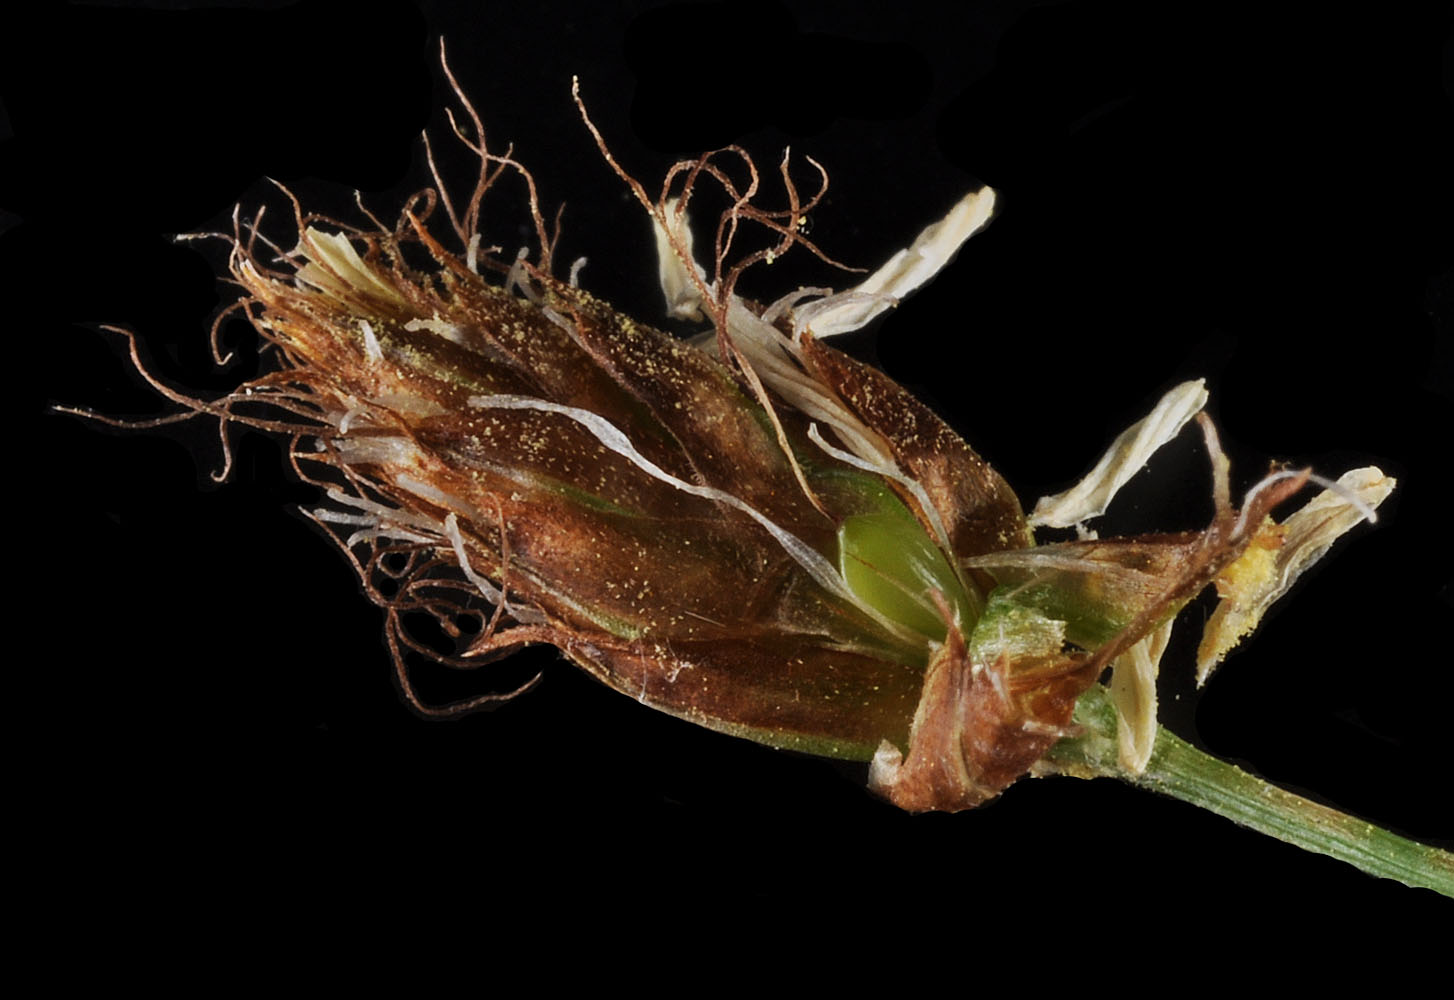 Flora of Eastern Washington Image: Bolboschoenus fluviatilis